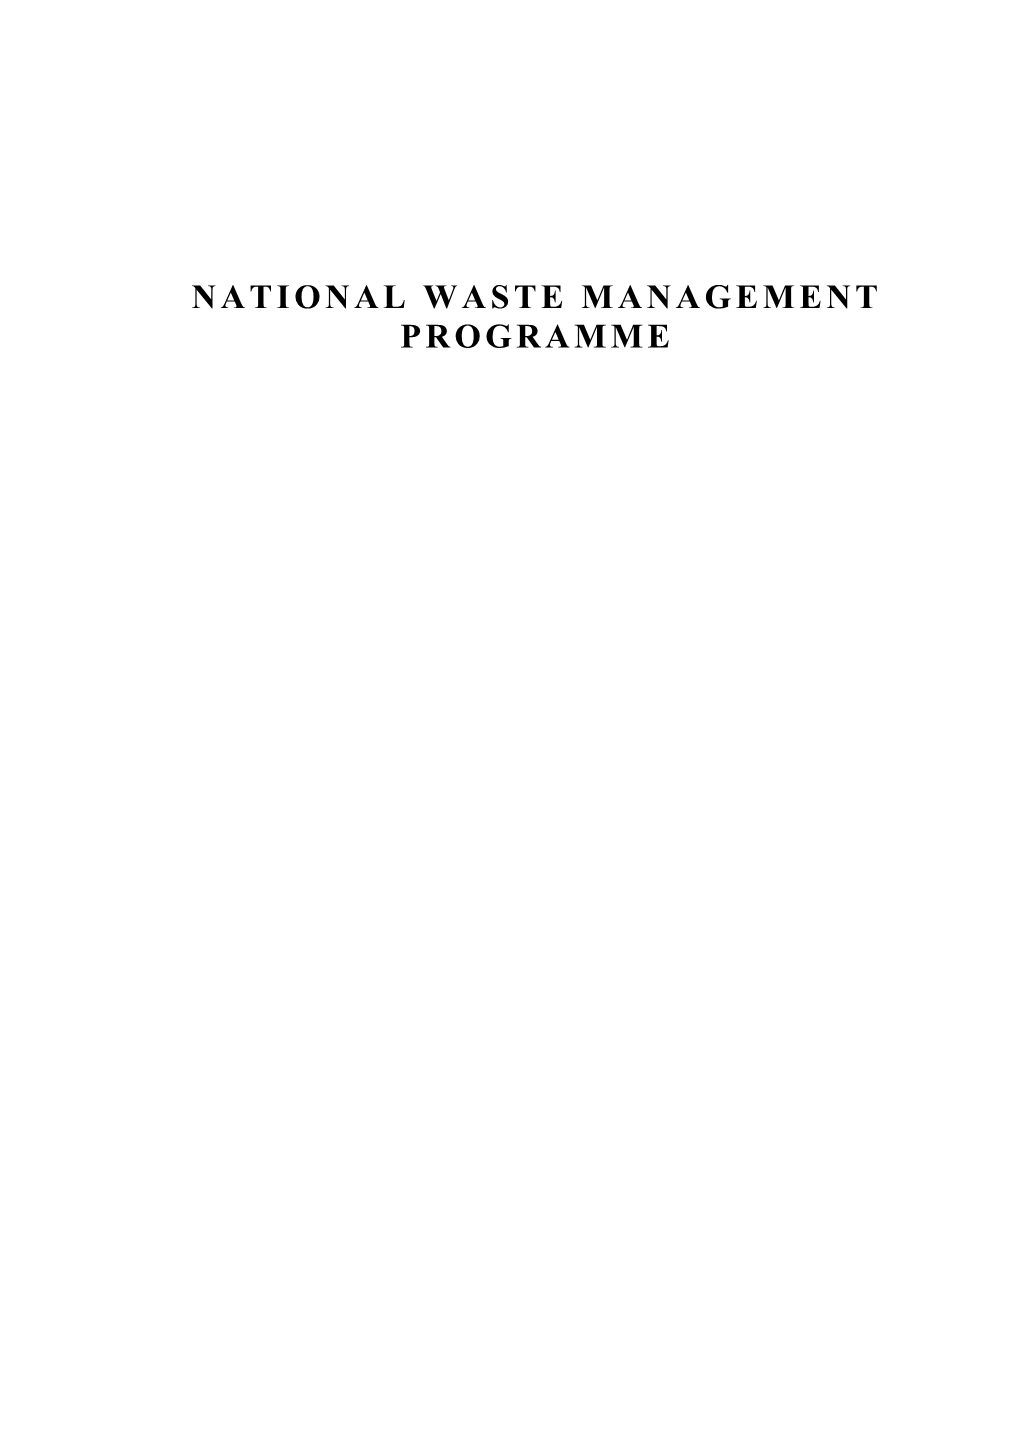 National Waste Management Programme